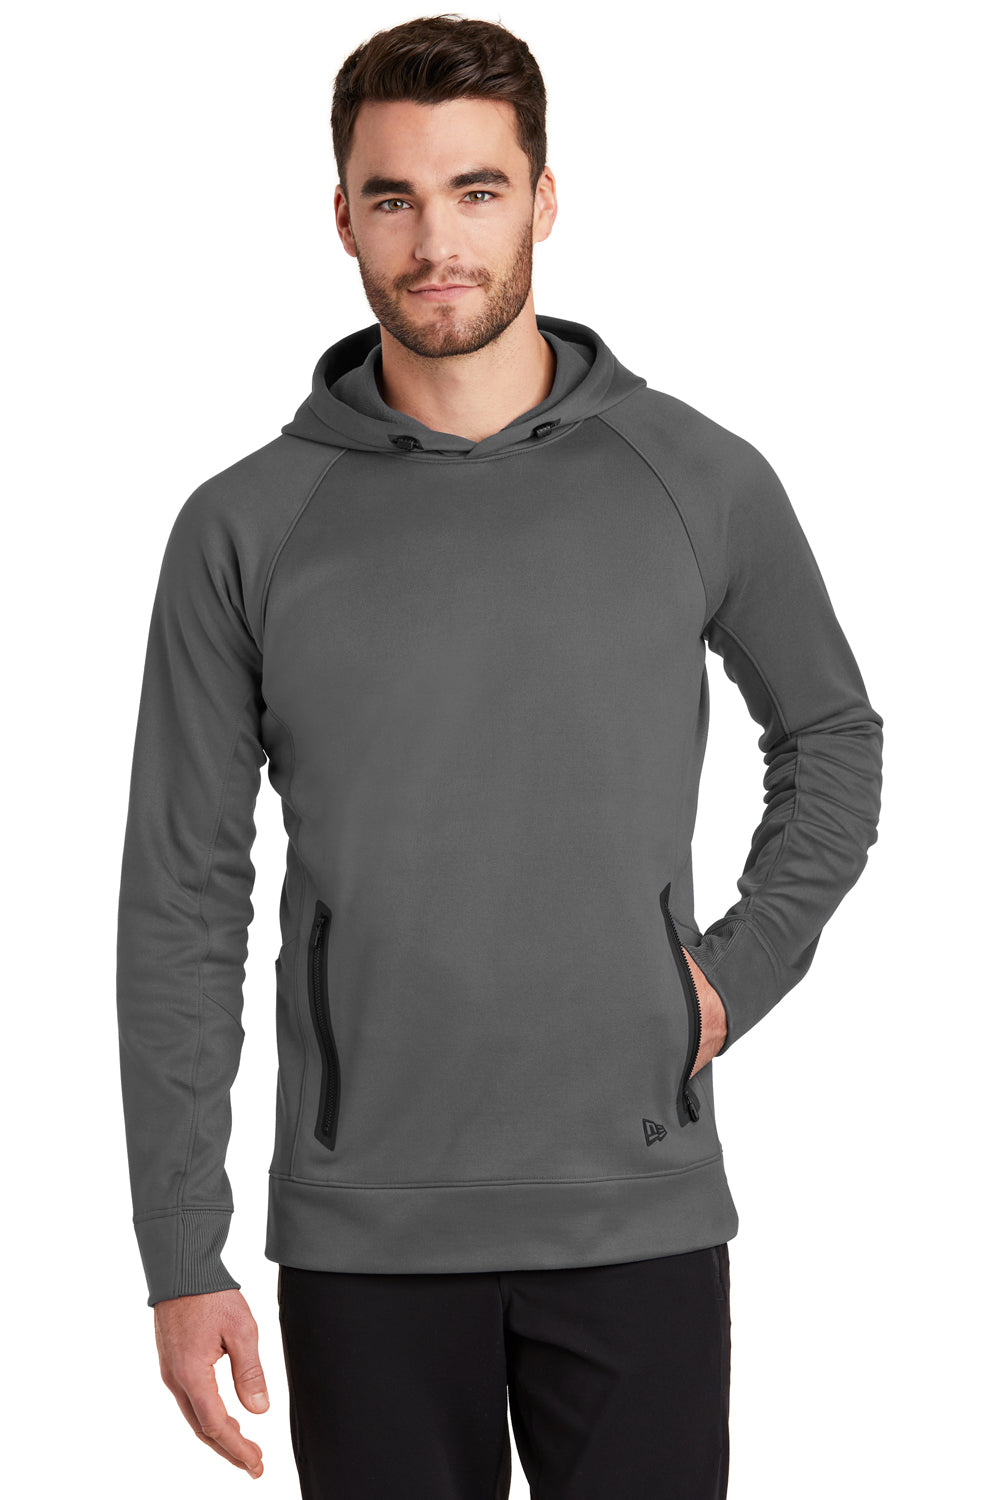 New Era NEA520 Mens Venue Fleece Hooded Sweatshirt Hoodie Graphite Grey Front